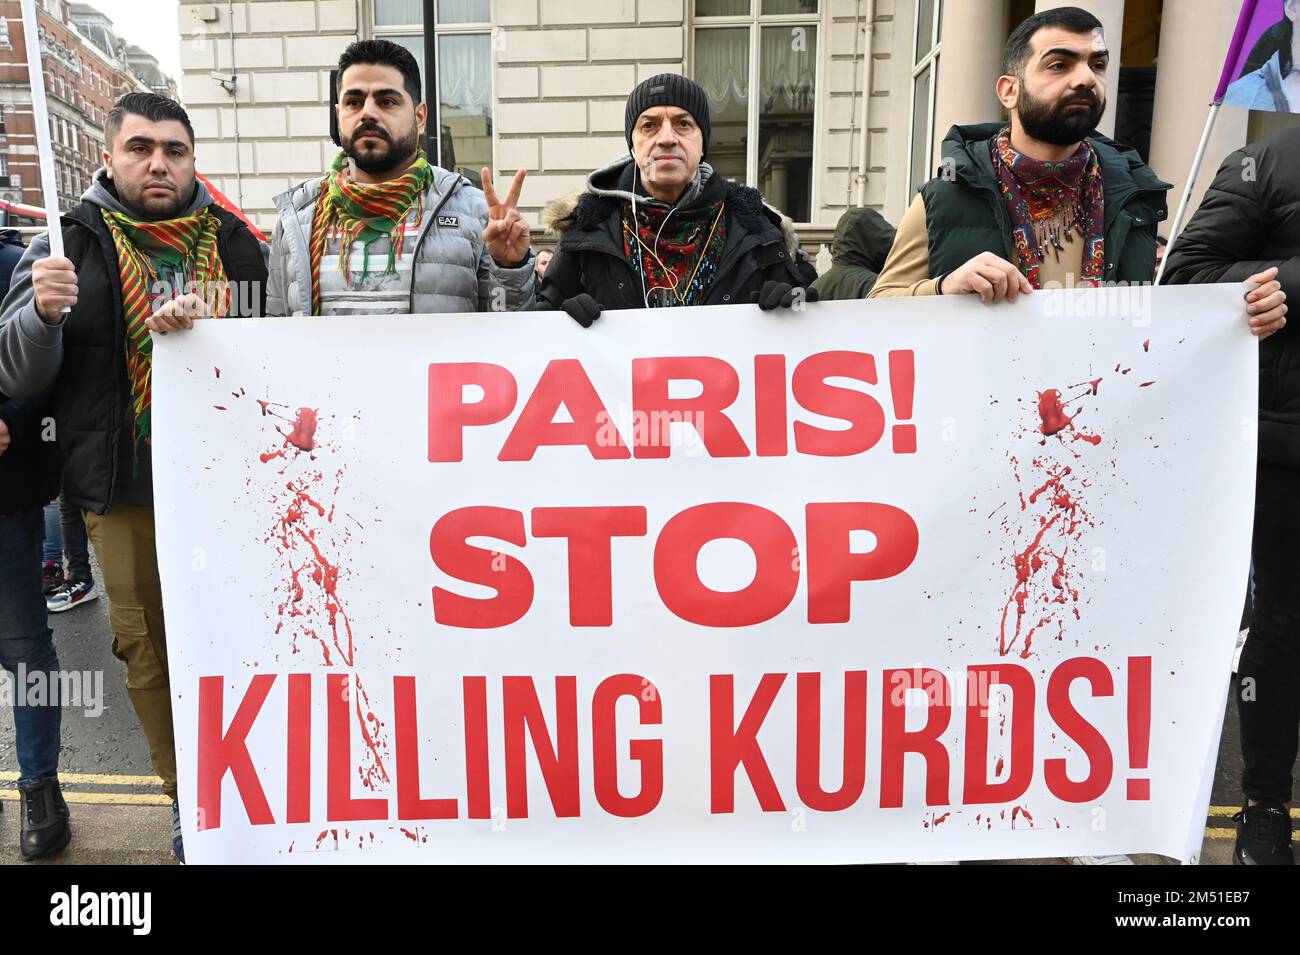 Ambasciata di Francia, Londra, Regno Unito. 2022-12-24: I manifestanti della comunità curda sostengono l'assassinio di tre curdi da parte della Turchia presso il Centro della comunità curda di Parigi. I manifestanti chiedono giustizia per loro e 3 donne curde uccise 10 anni fa. I manifestanti sostengono inoltre che il governo francese ha aiutato l'assassinio. Perché ci vogliono 40 minuti perché la polizia e l'ambulanza arrivino per assistere le 3 vittime curde? La vigilia di Natale si sta facendo buio per i migranti che protestano per proteggere i propri diritti e le proprie libertà, chiedendo giustizia per i 3 curdi uccisi a Parigi venerdì 23 dicembre 202 Foto Stock